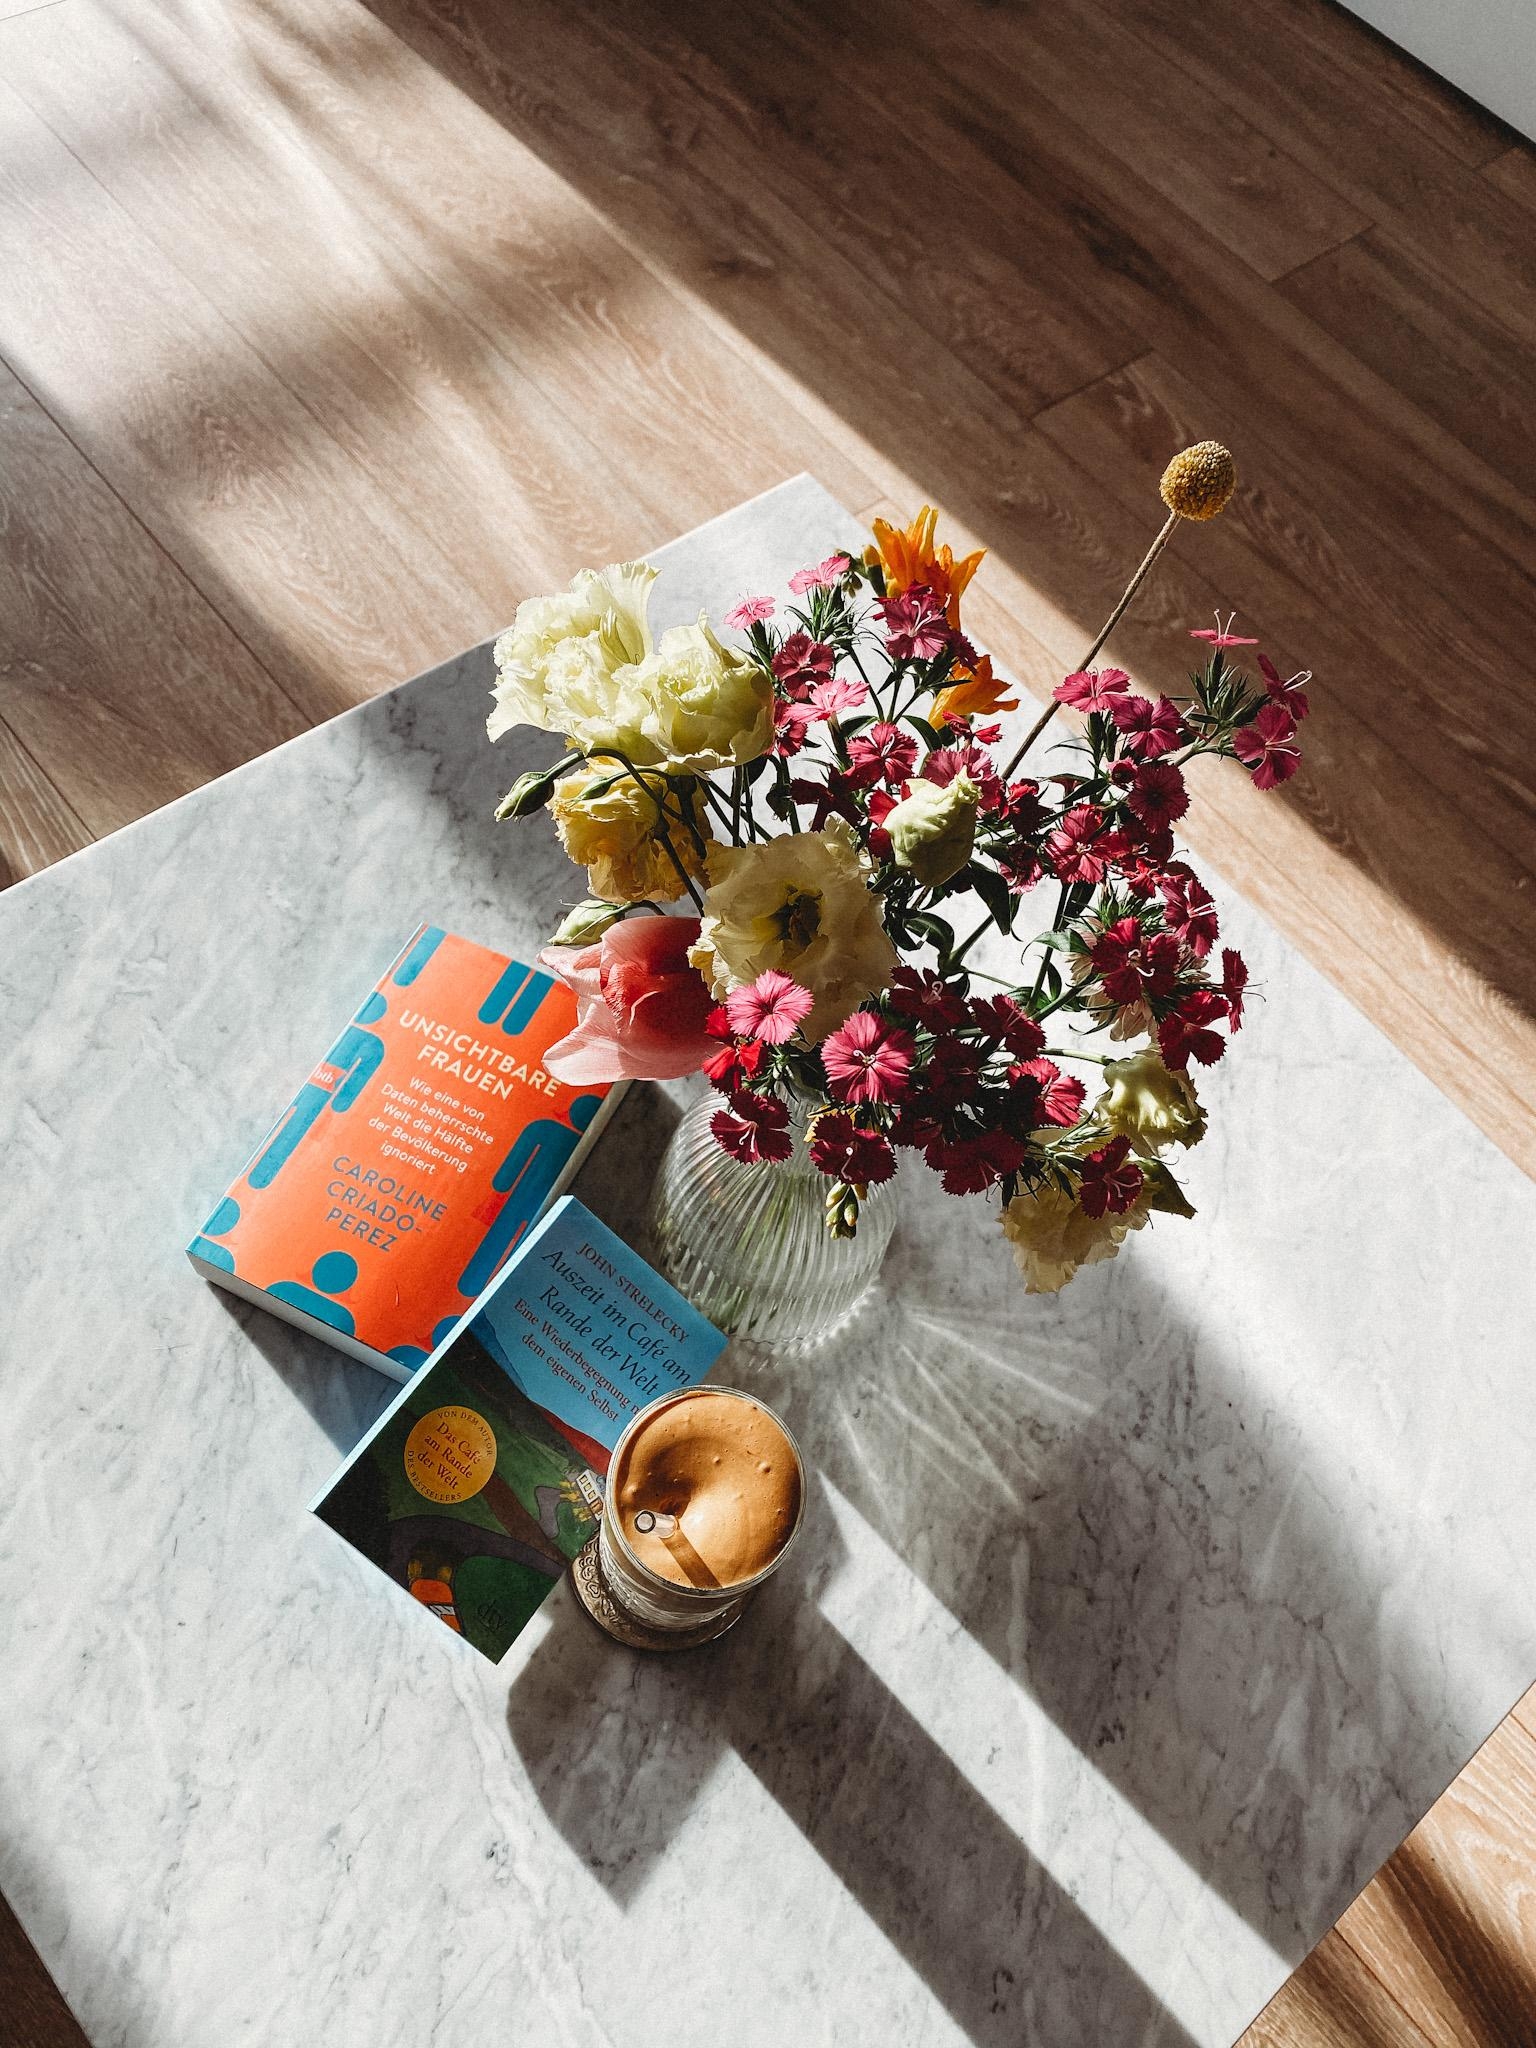 Kaffee, Blumen und Bücher. Was will man mehr ?
#flowers #couchstyle #coffee #couchtisch